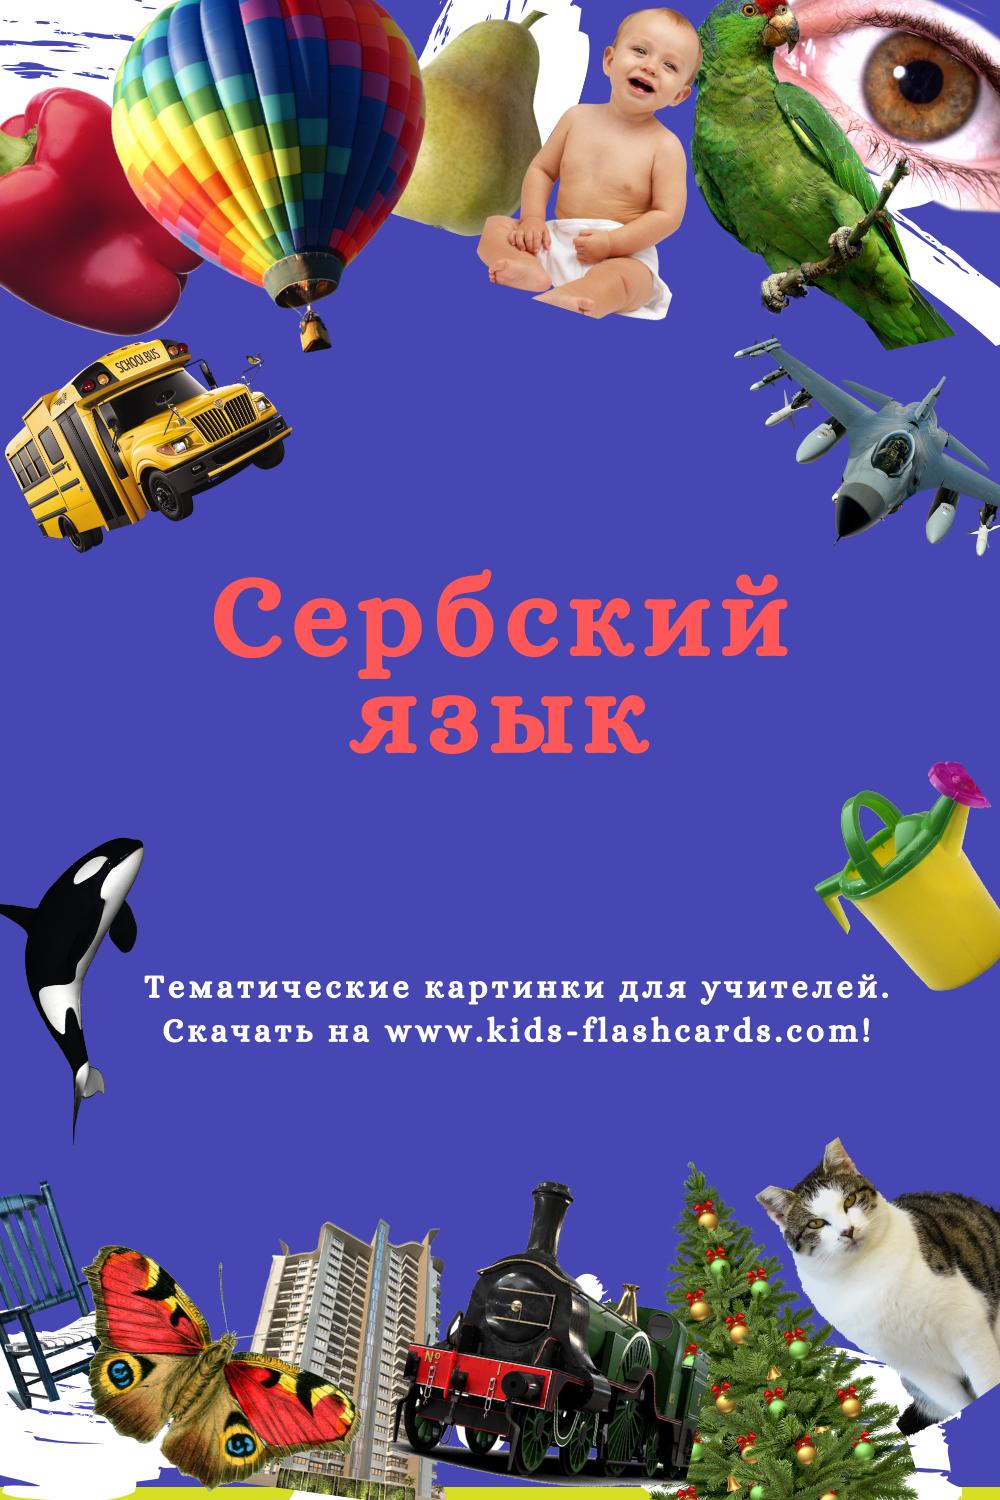 Сербский язык - распечатки для детей